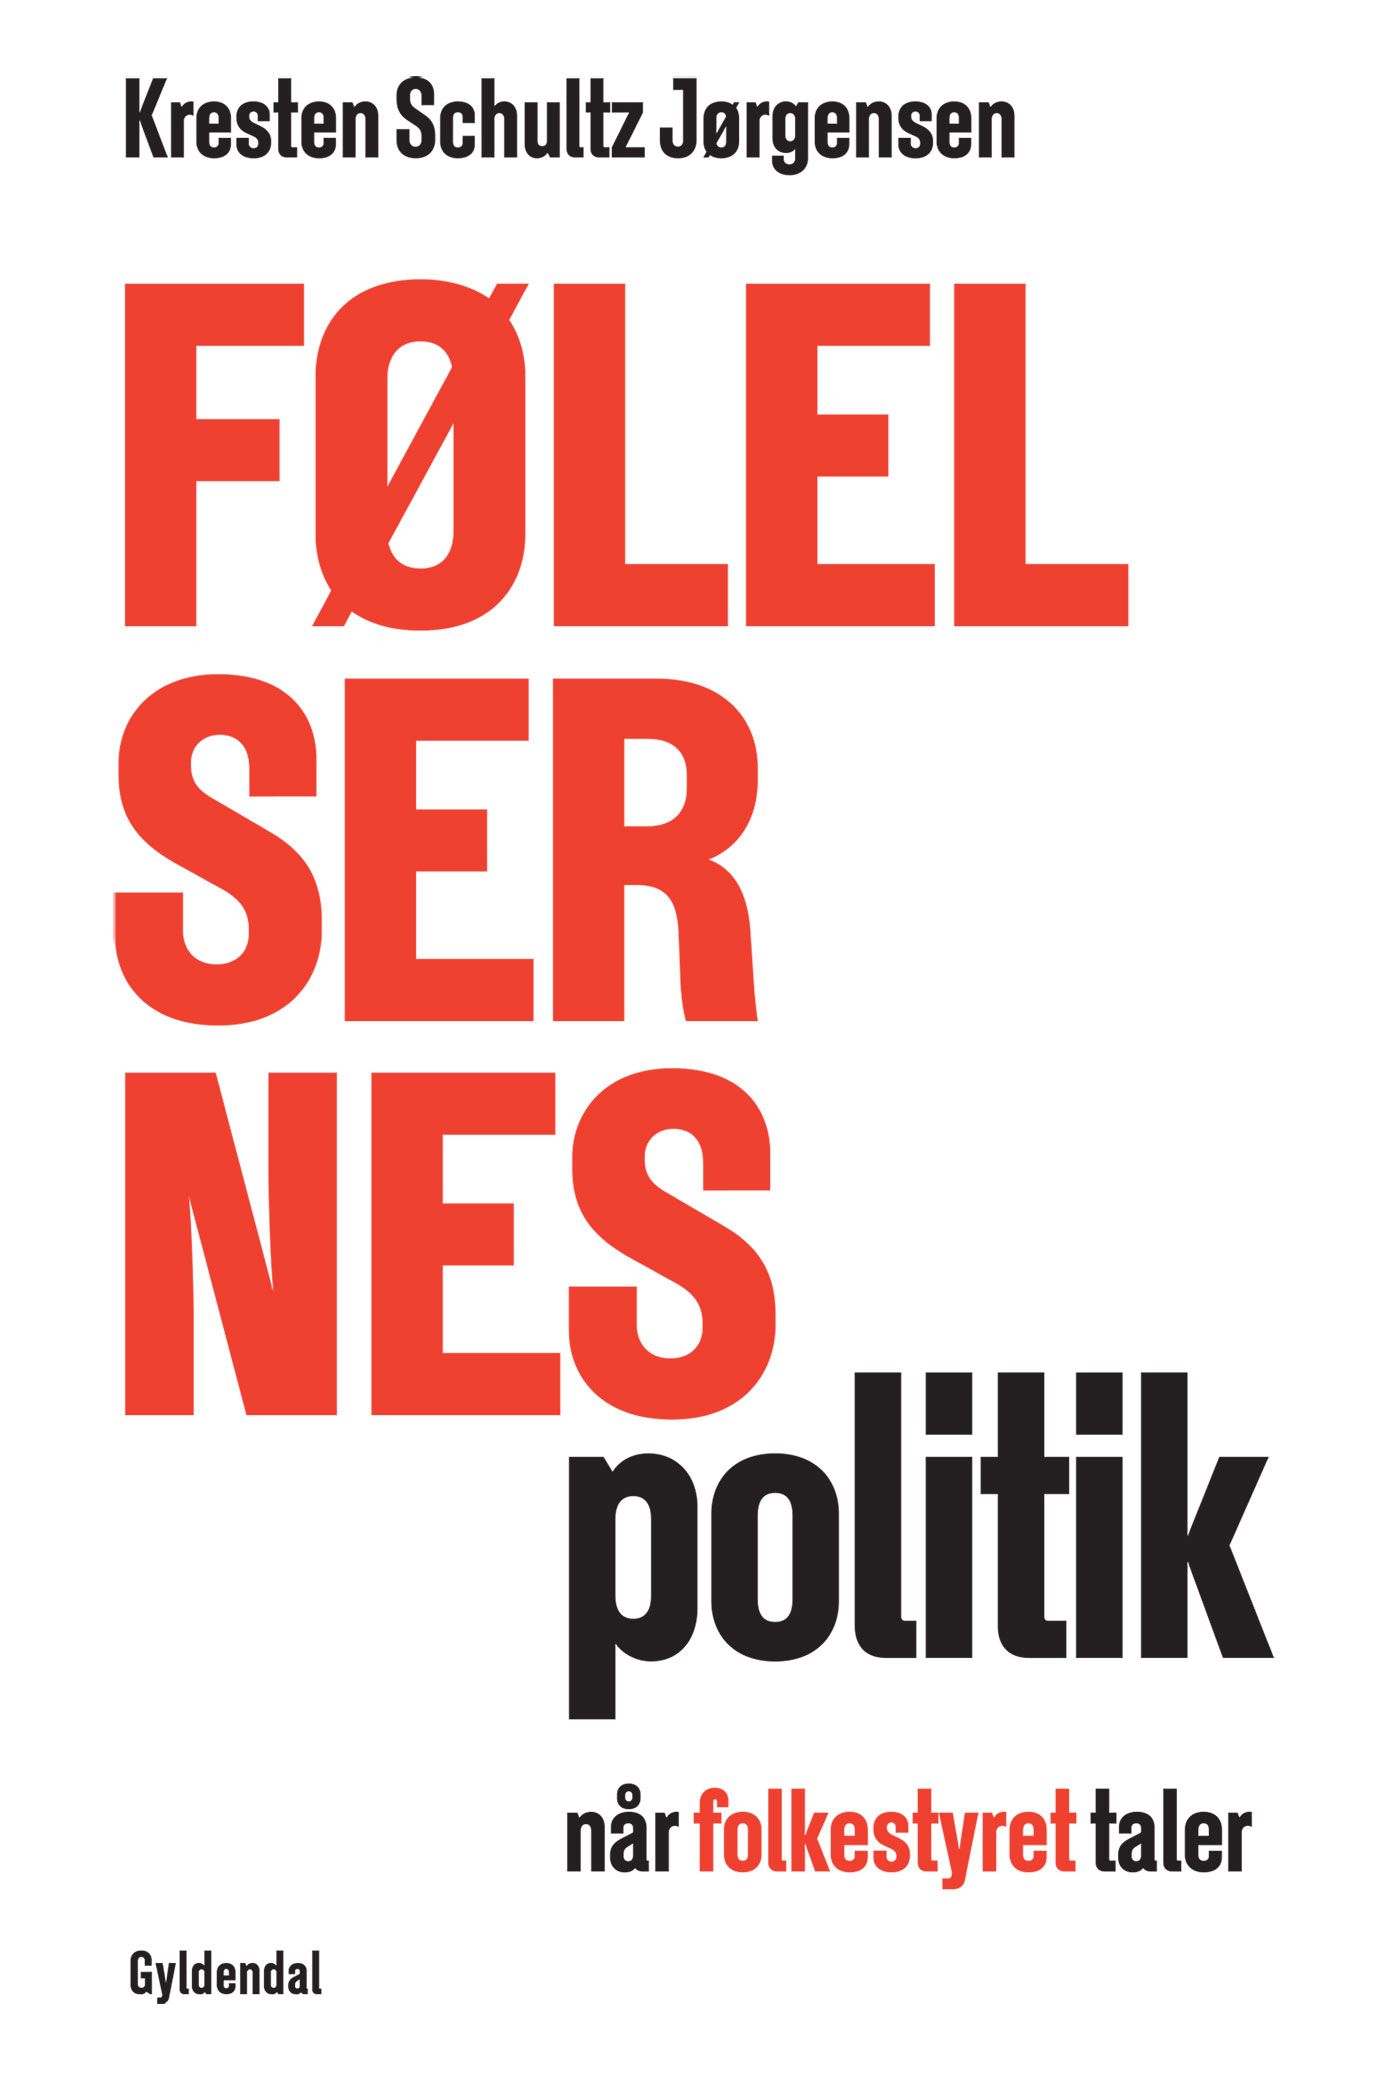 Følelsernes politik, e-bok av Kresten Schultz Jørgensen